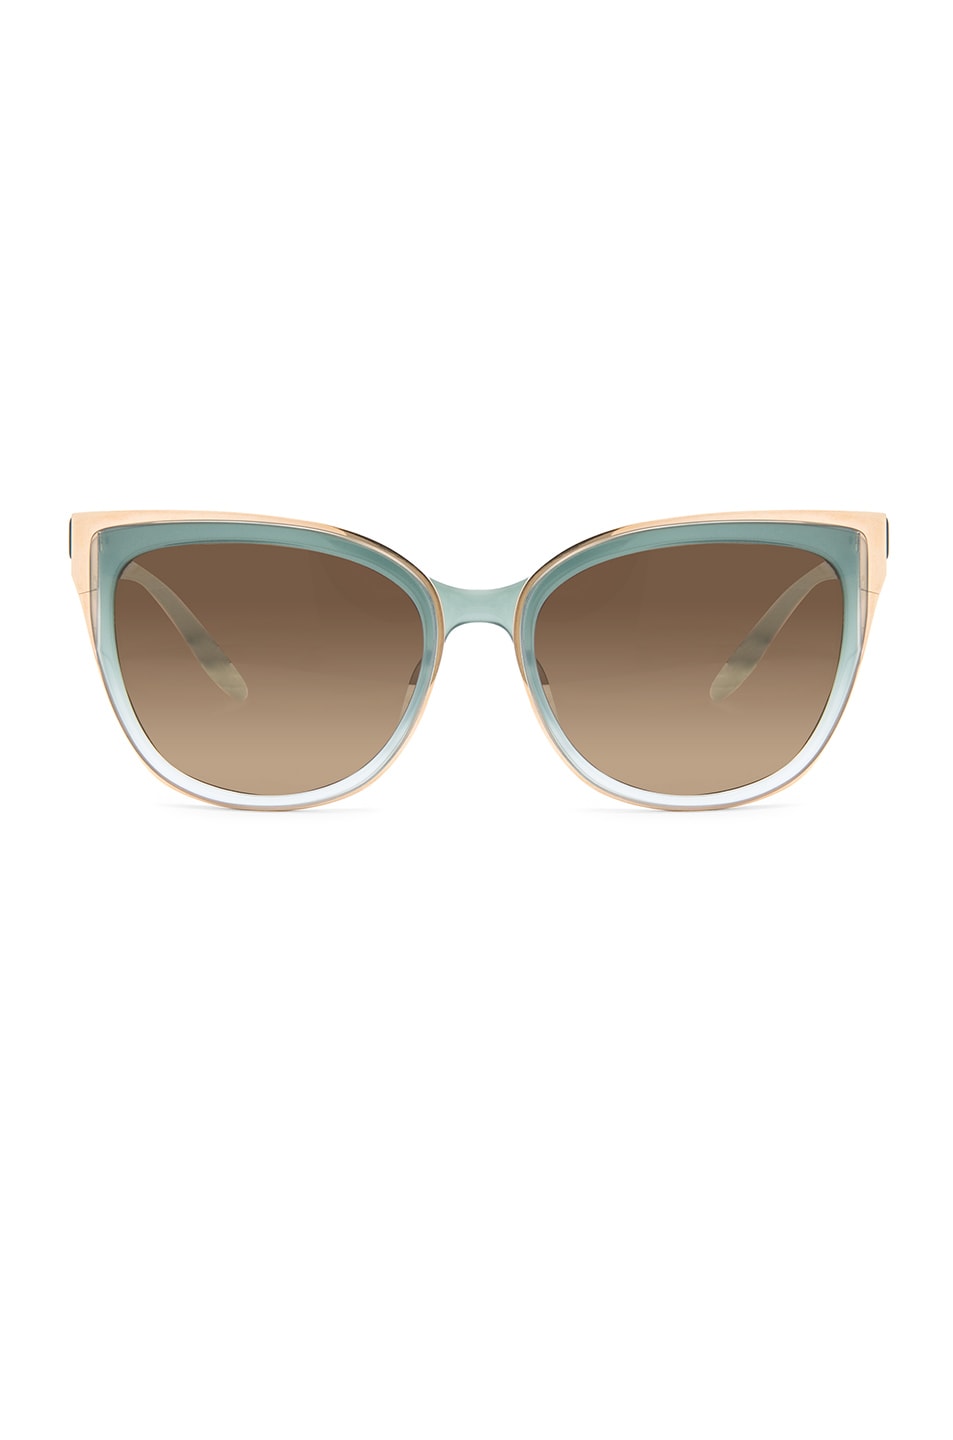 Image 1 of Barton Perreira for FWRD Winette Sunglasses in Seafoam & Gold